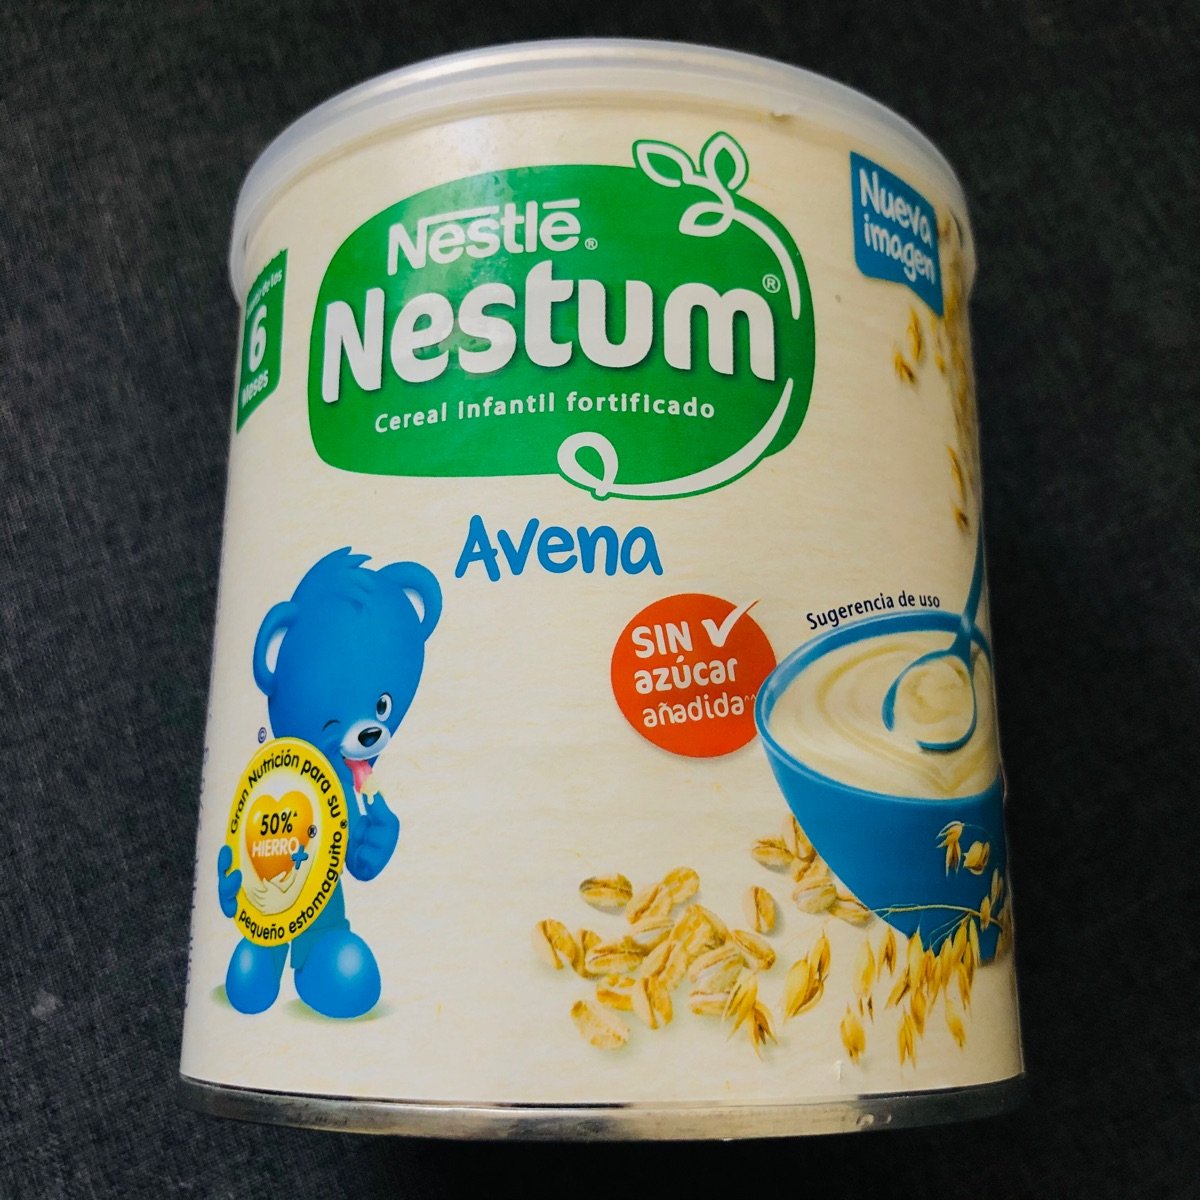 Nestlé nestum Reviews